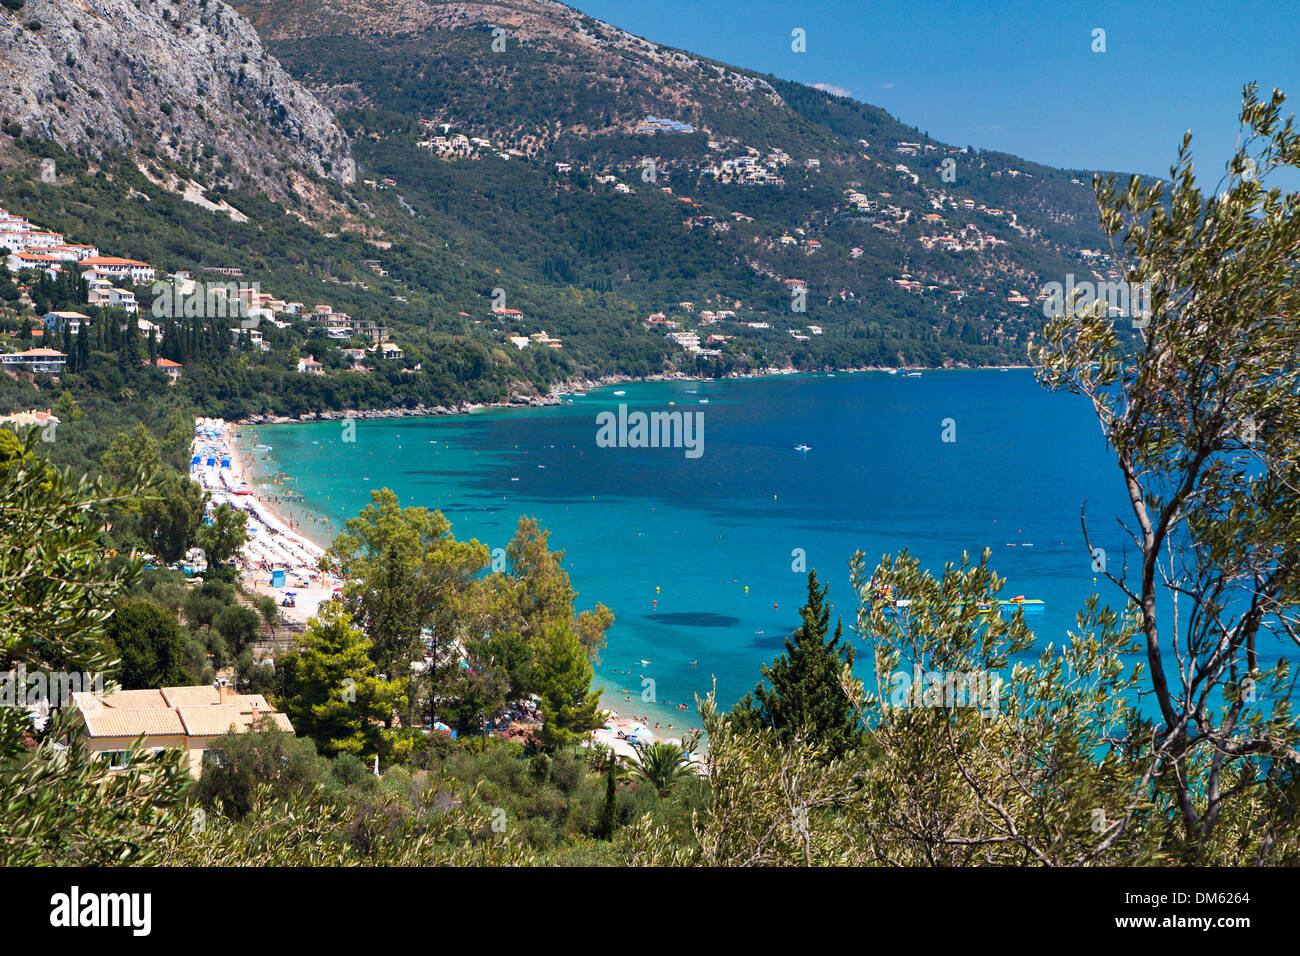 Barbati bay at Corfu island in Greece Stock Photo